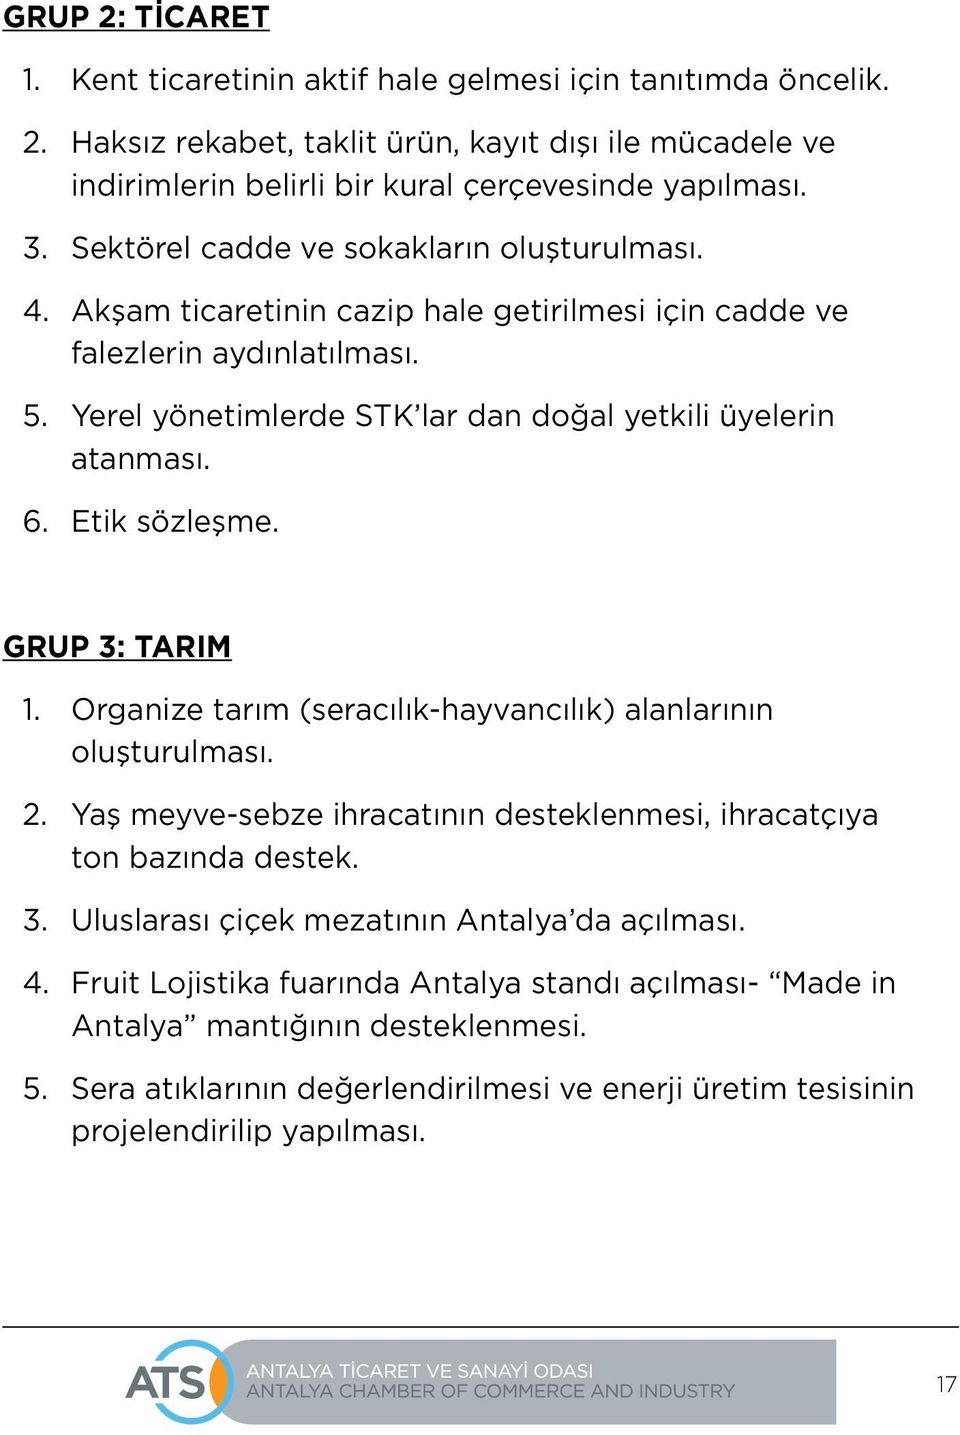 Etik sözleşme. GRUP 3: TARIM 1. Organize tarım (seracılık-hayvancılık) alanlarının oluşturulması. 2. Yaş meyve-sebze ihracatının desteklenmesi, ihracatçıya ton bazında destek. 3. Uluslarası çiçek mezatının Antalya da açılması.